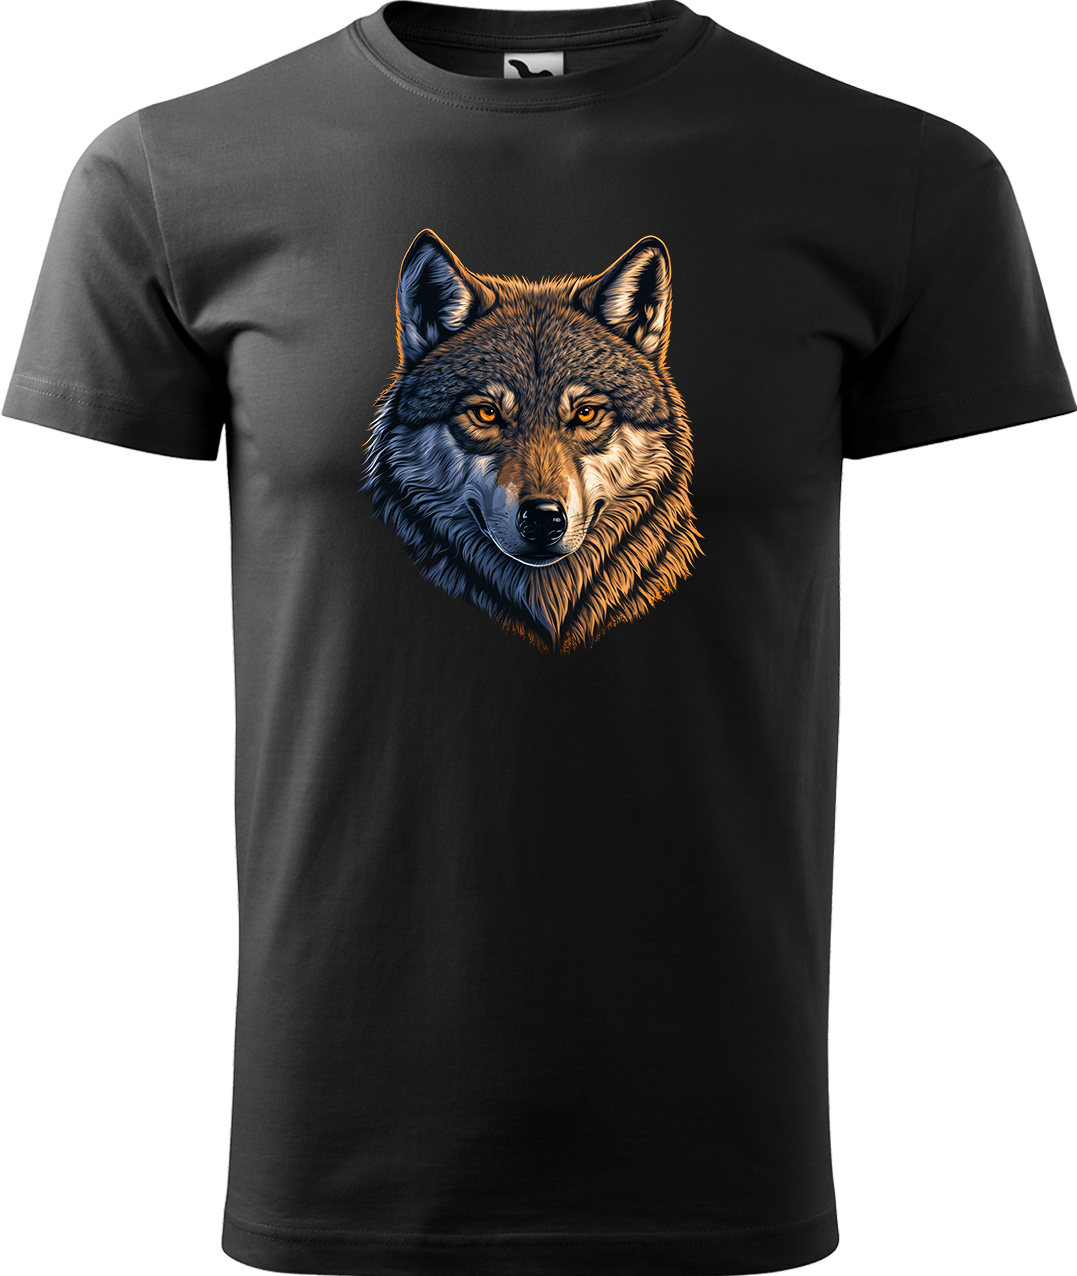 Pánské tričko s vlkem - Hlava vlka Velikost: XL, Barva: Černá (01), Střih: pánský